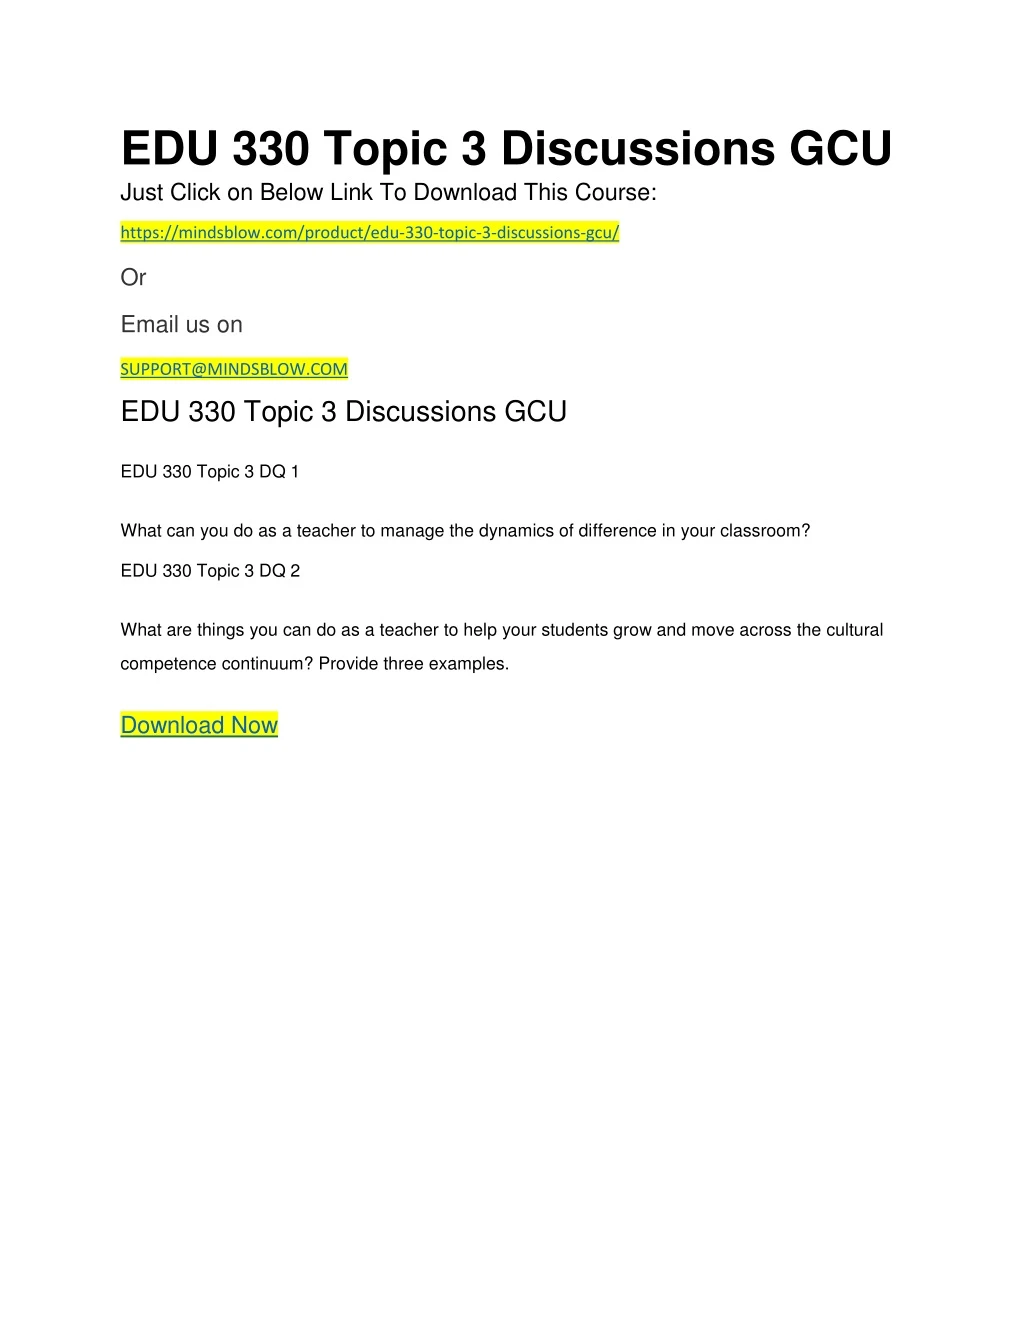 edu 330 topic 3 discussions gcu just click